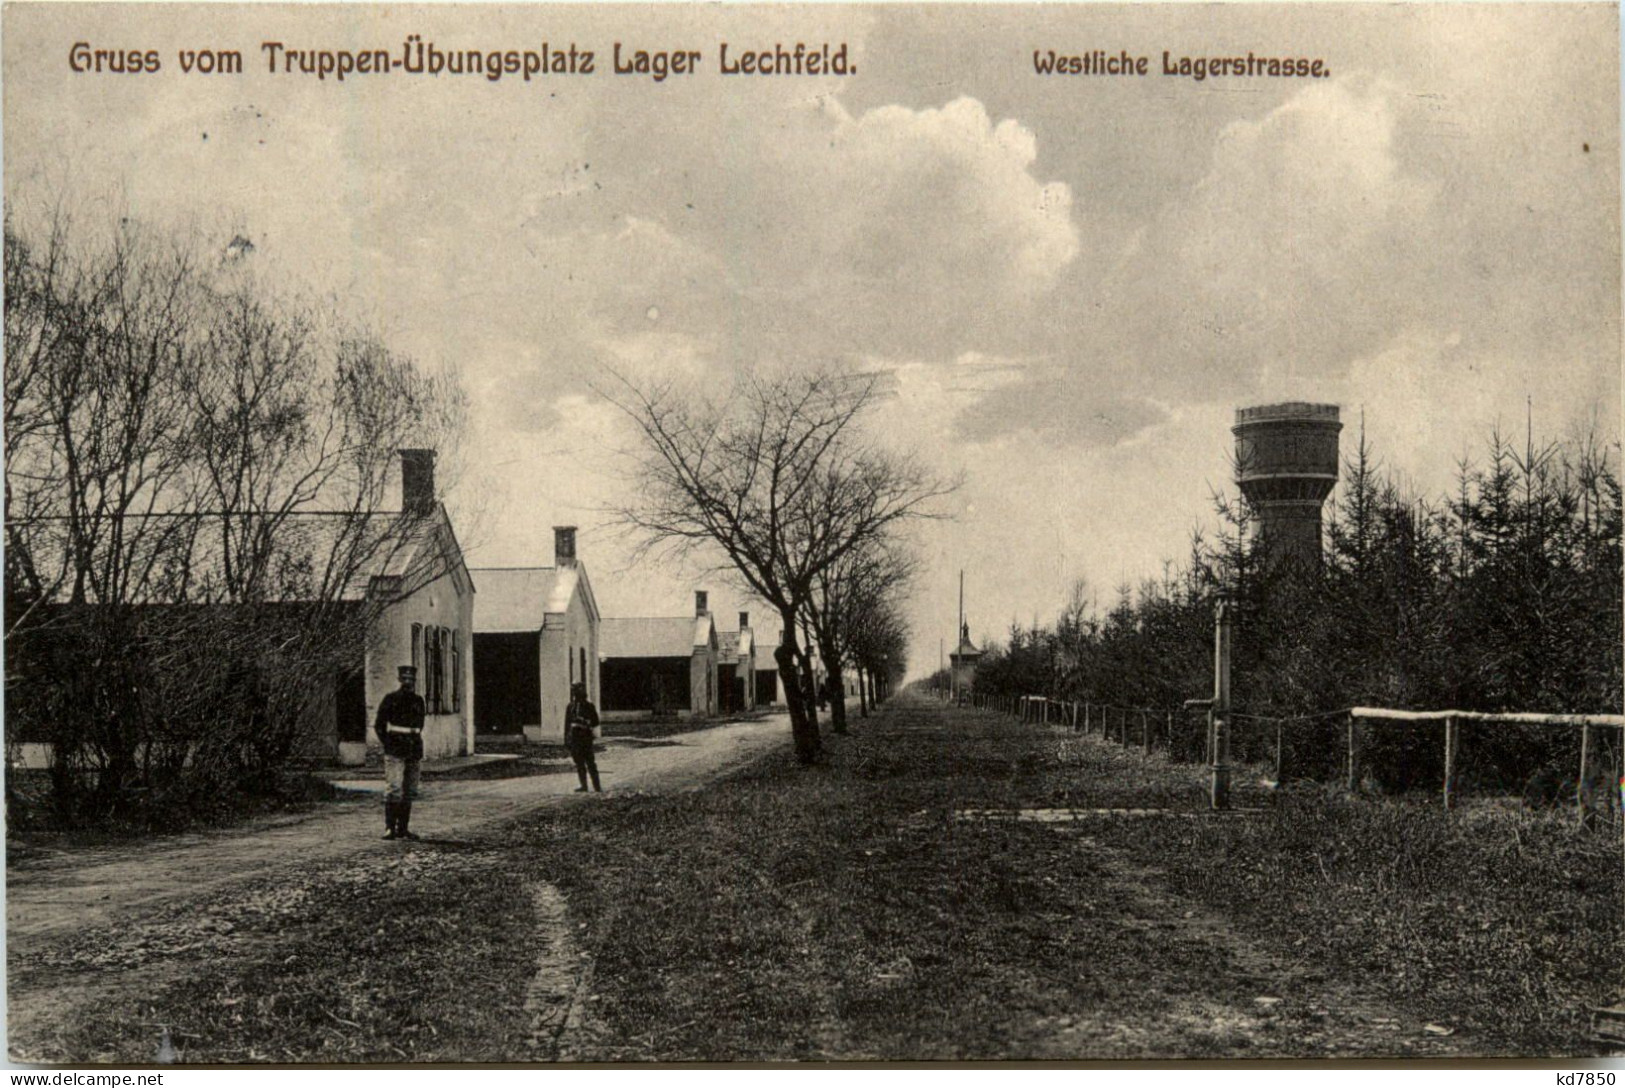 Lager-Lechfeld, Grüsse, Truppenübungsplatz, Westliche Lagerstrasse - Augsburg